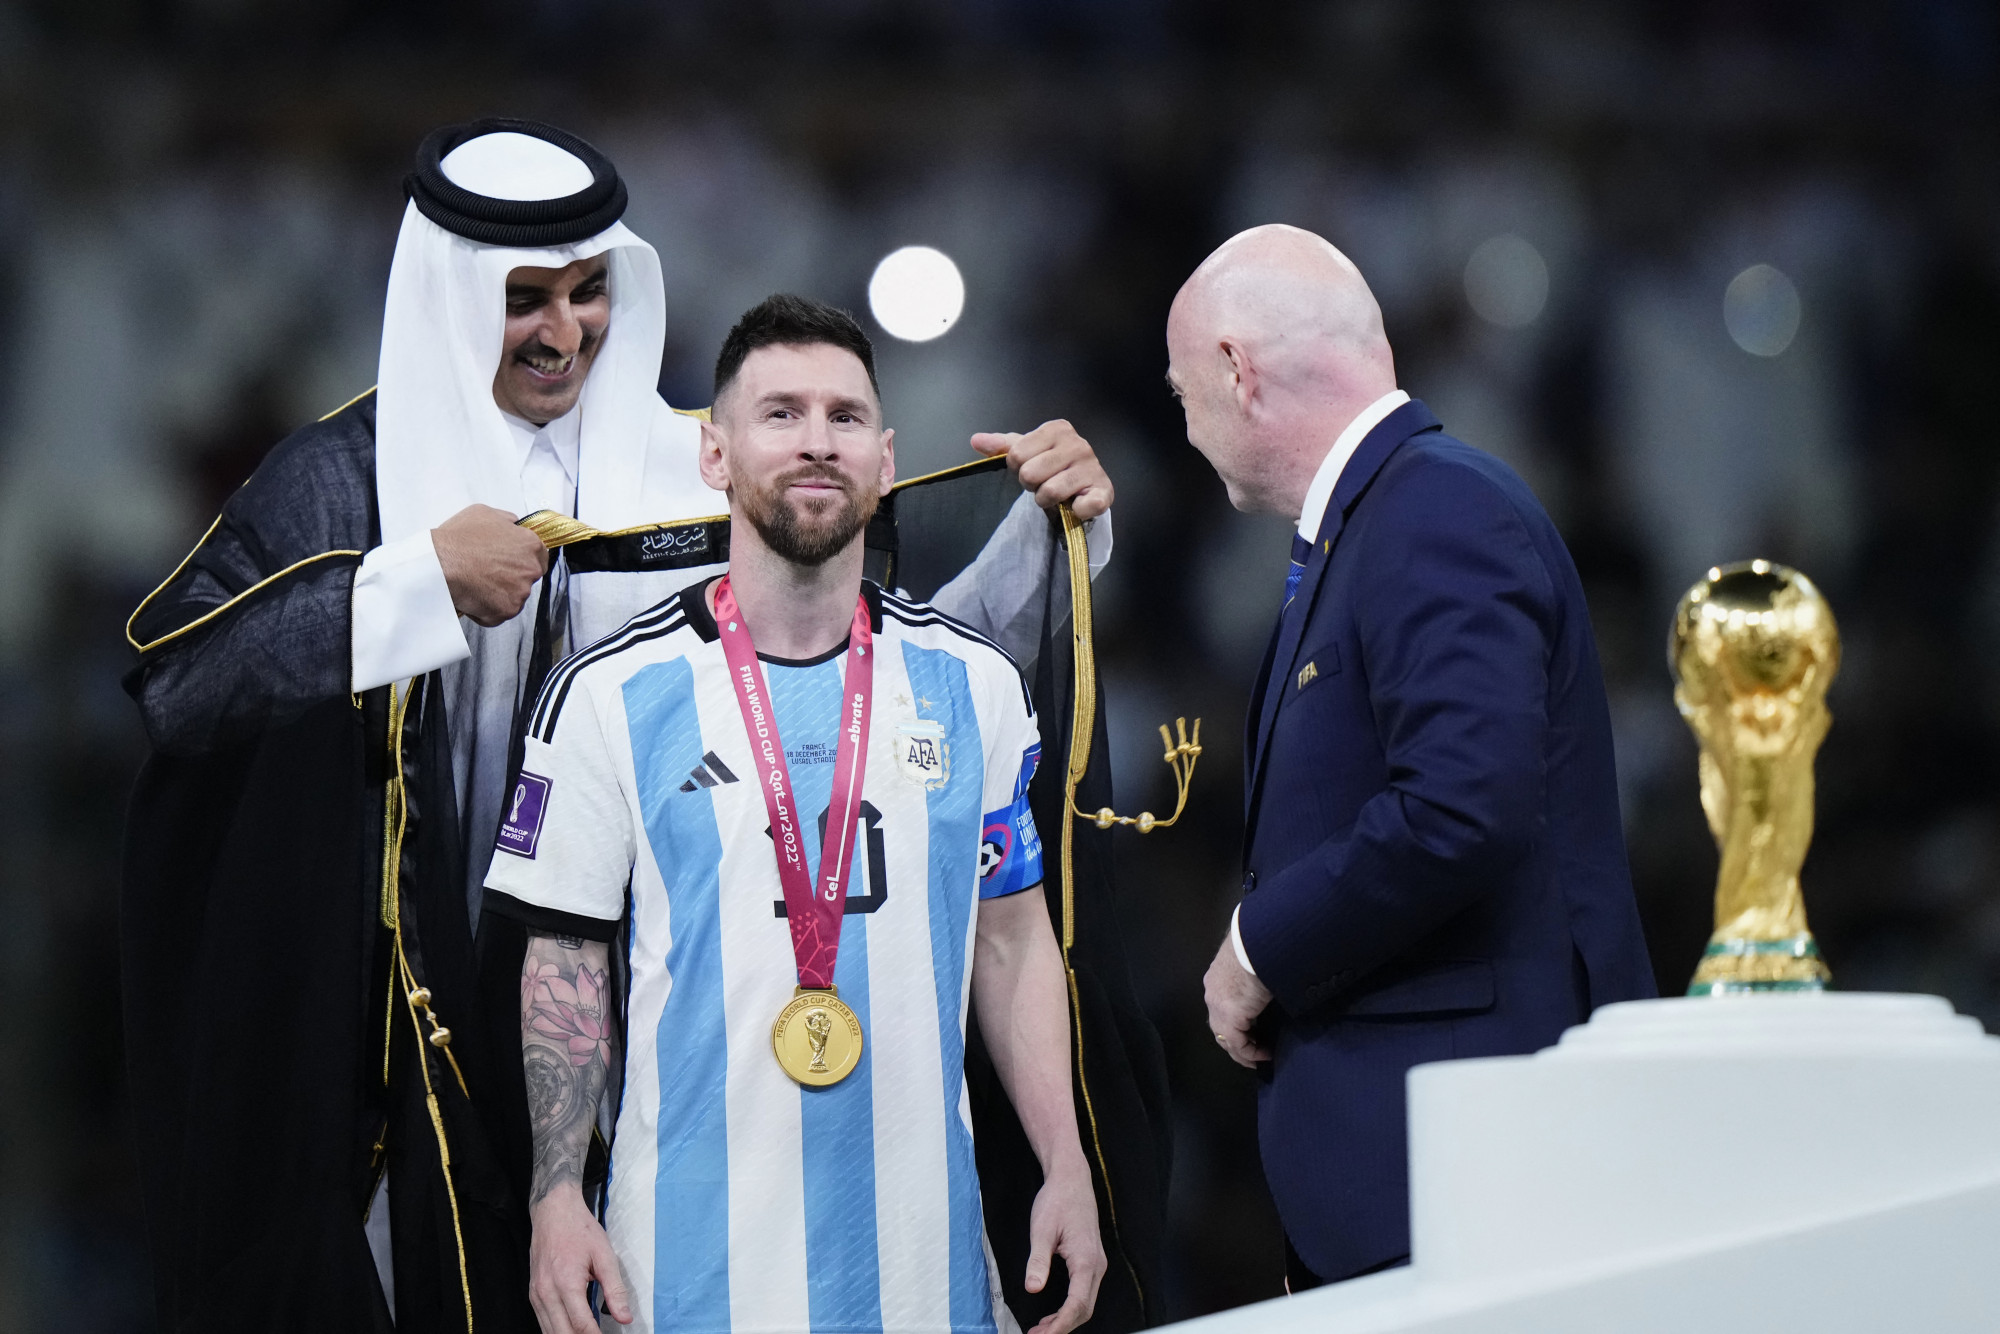 Tamím emír egy köpenyt ad Messire, a jelenetet Gianni Infantino FIFA-elnök szemléli